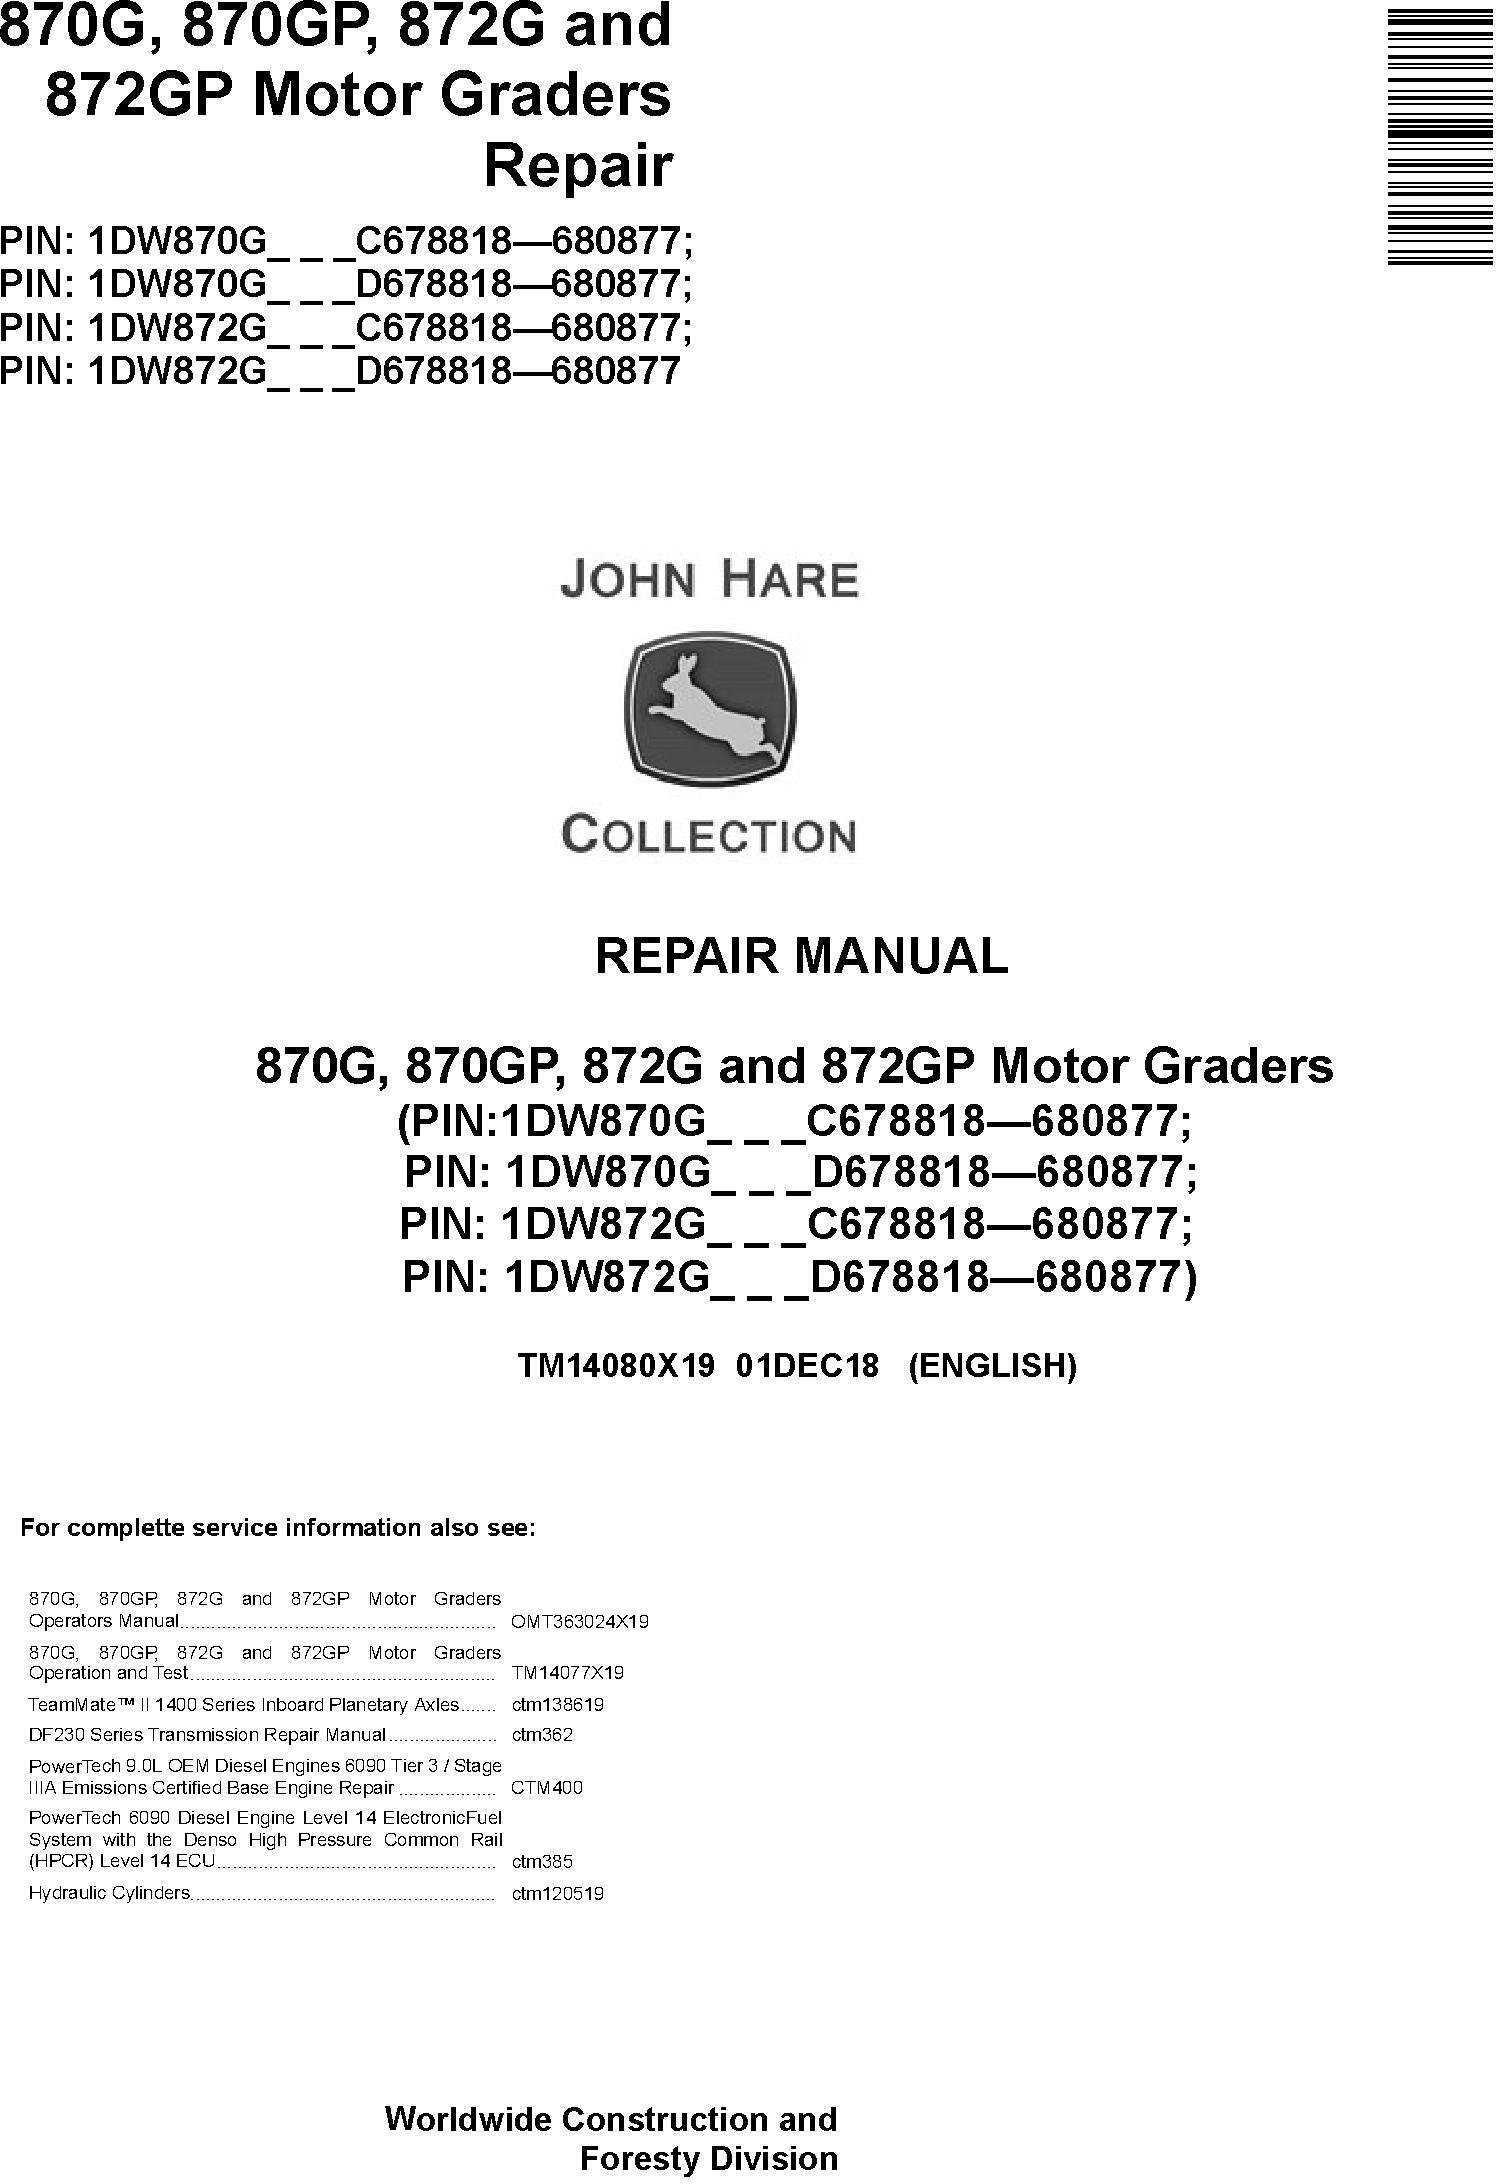 John Deere 870G, 870GP, 872G, 872GP (SN. C678818-680877) Motor Graders Repair Manual (TM14080X19) - 19000